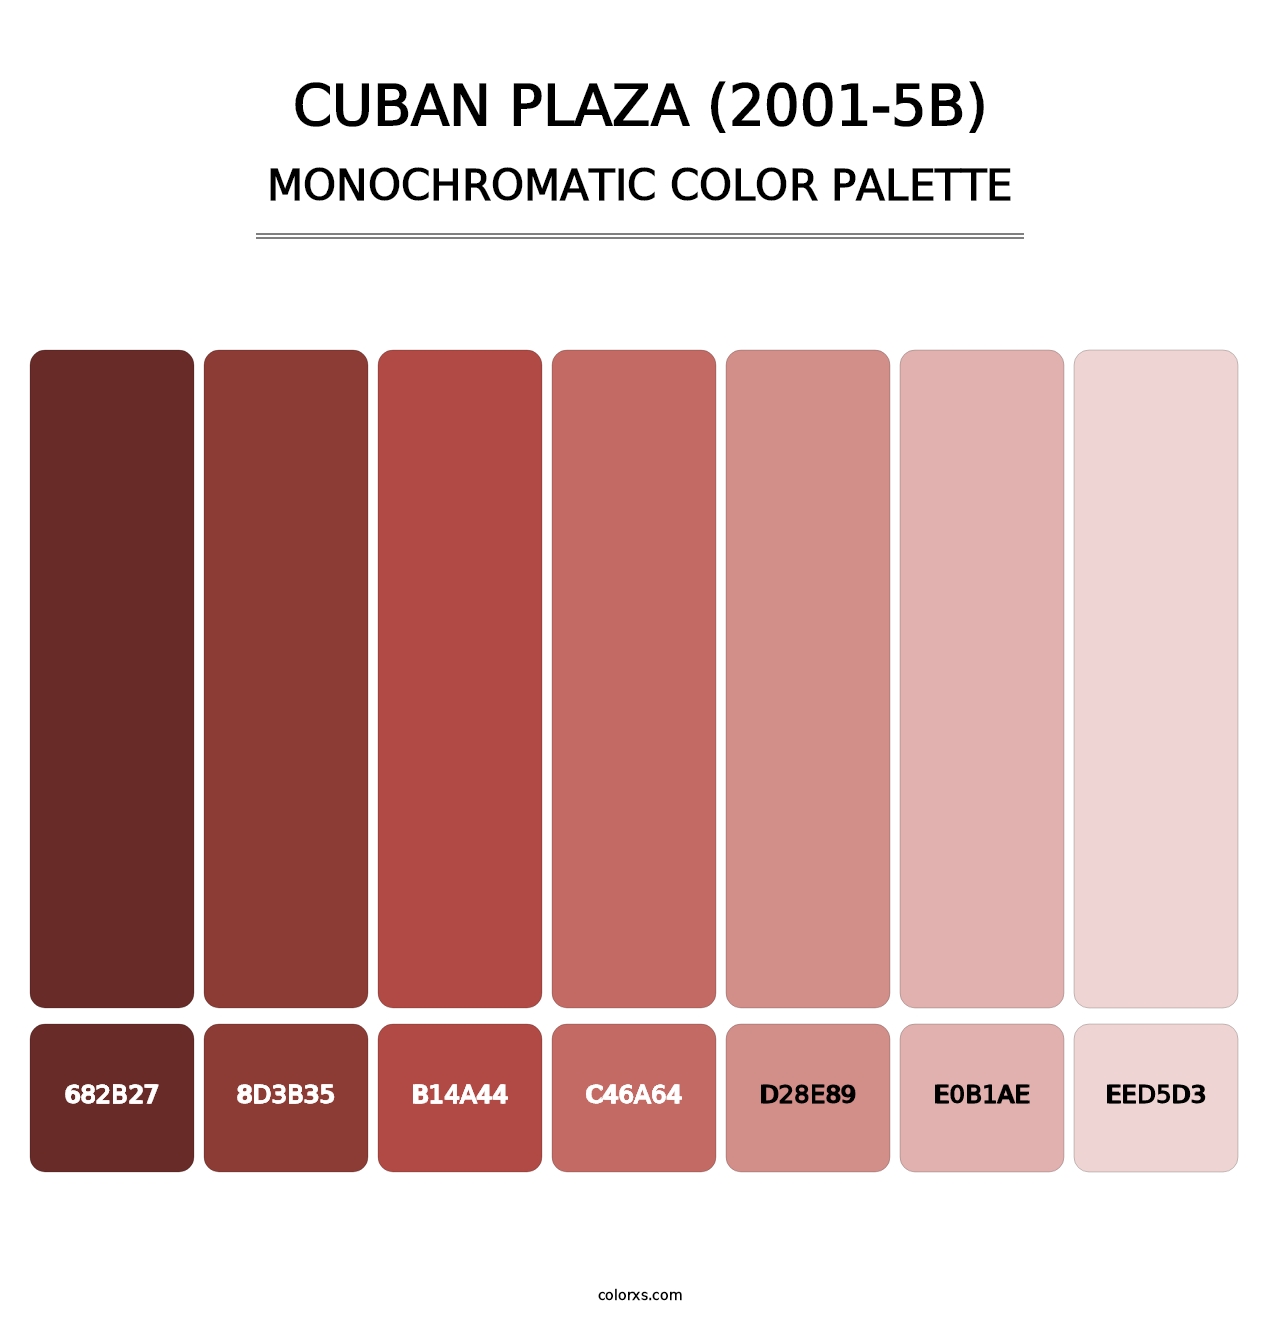 Cuban Plaza (2001-5B) - Monochromatic Color Palette